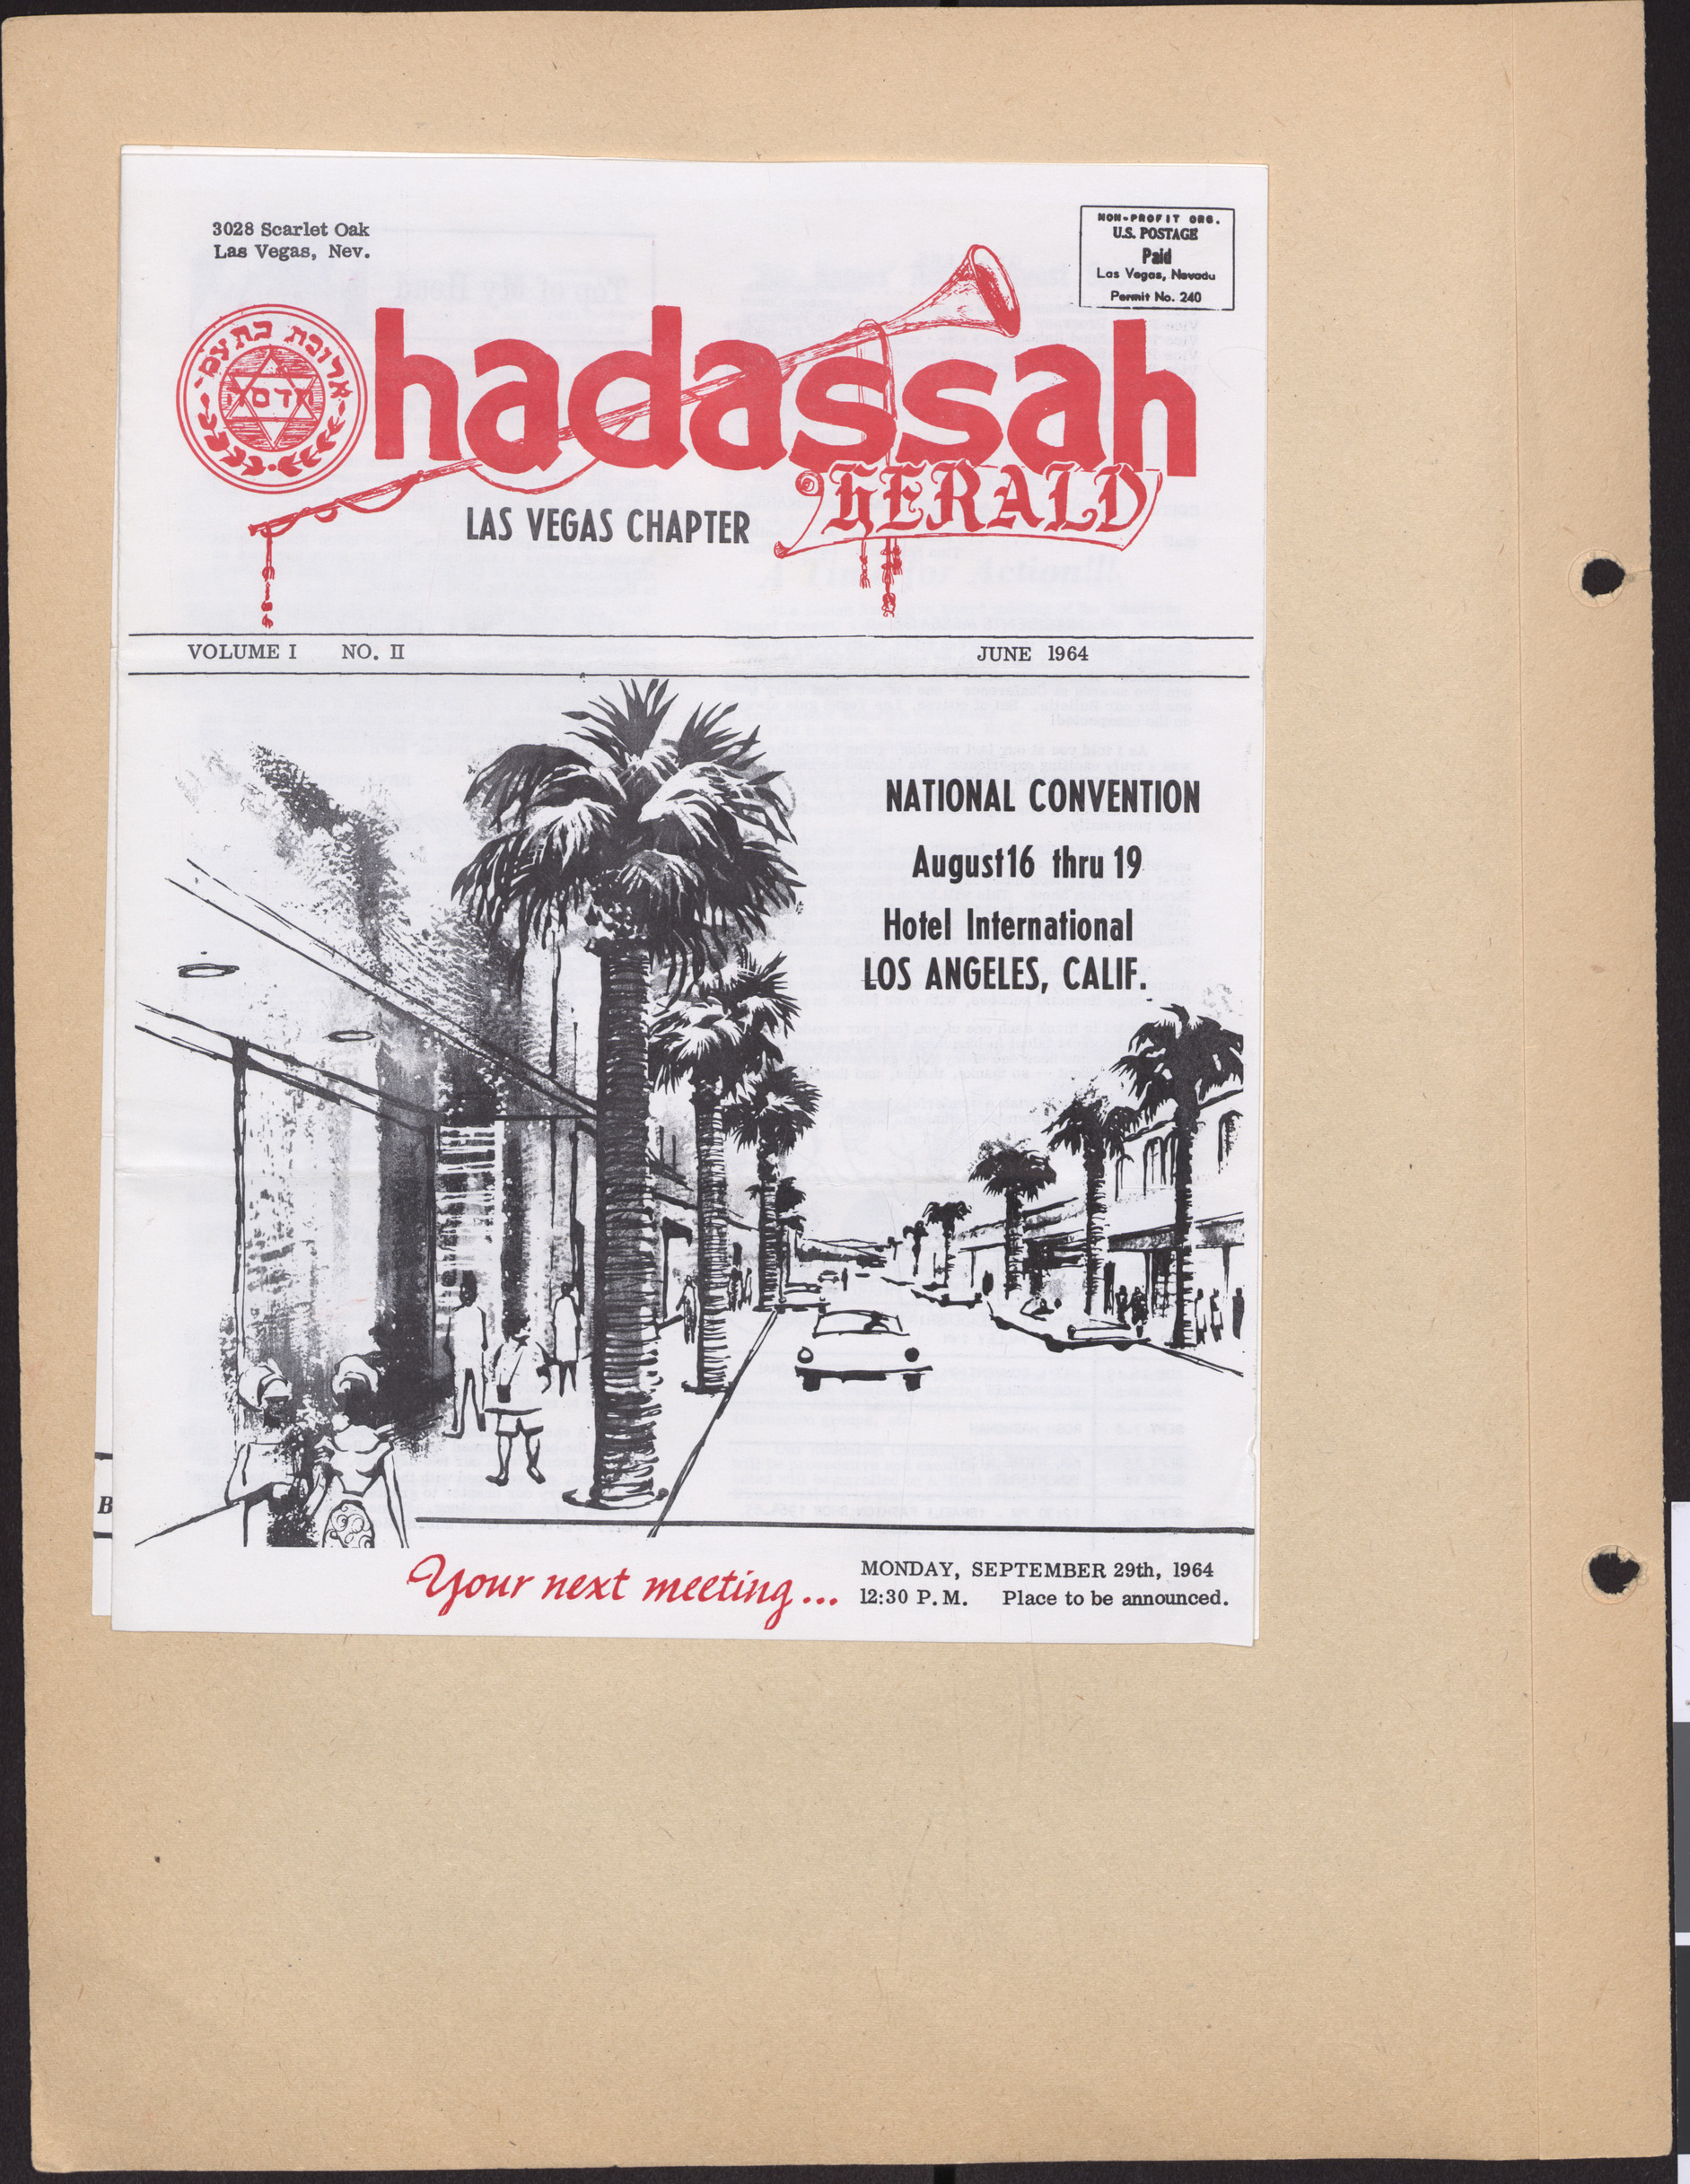 Hadassah Las Vegas Chapter newsletter, June 1964, cover